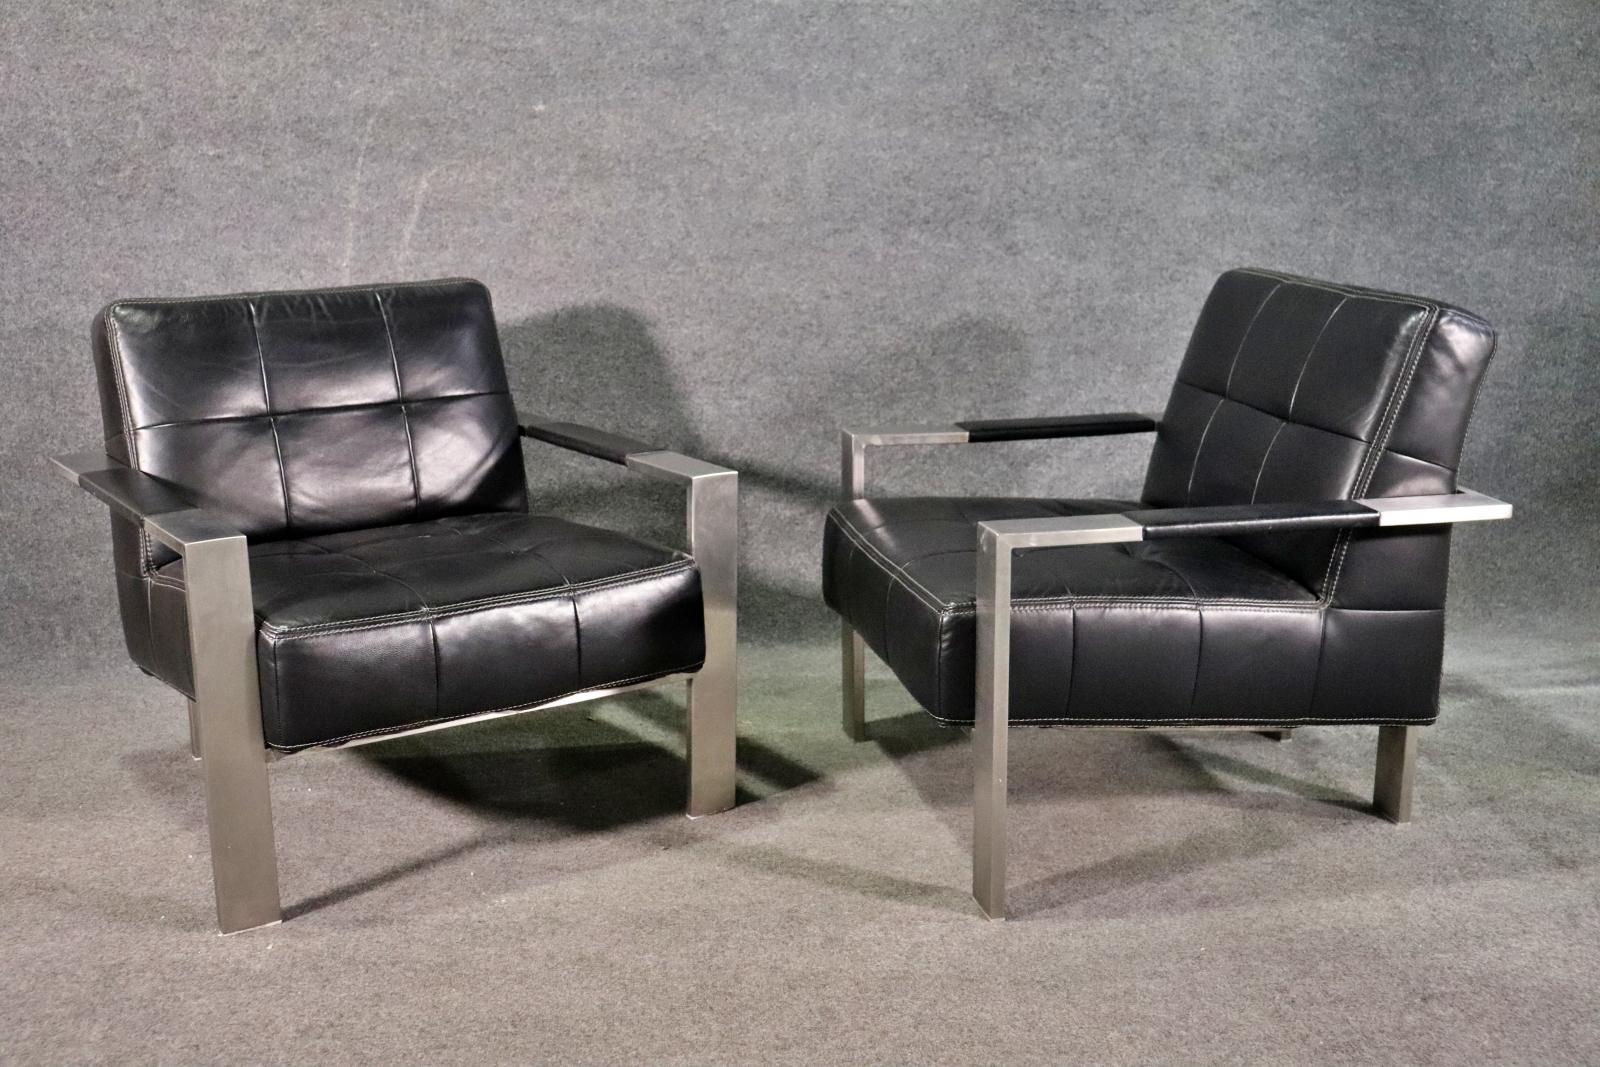 Ein Paar Loungesessel im Stil der Jahrhundertmitte von Paul Brayton. Der breite Metallrahmen stützt den getufteten Sitz.
Bitte bestätigen Sie den Standort NY oder NJ